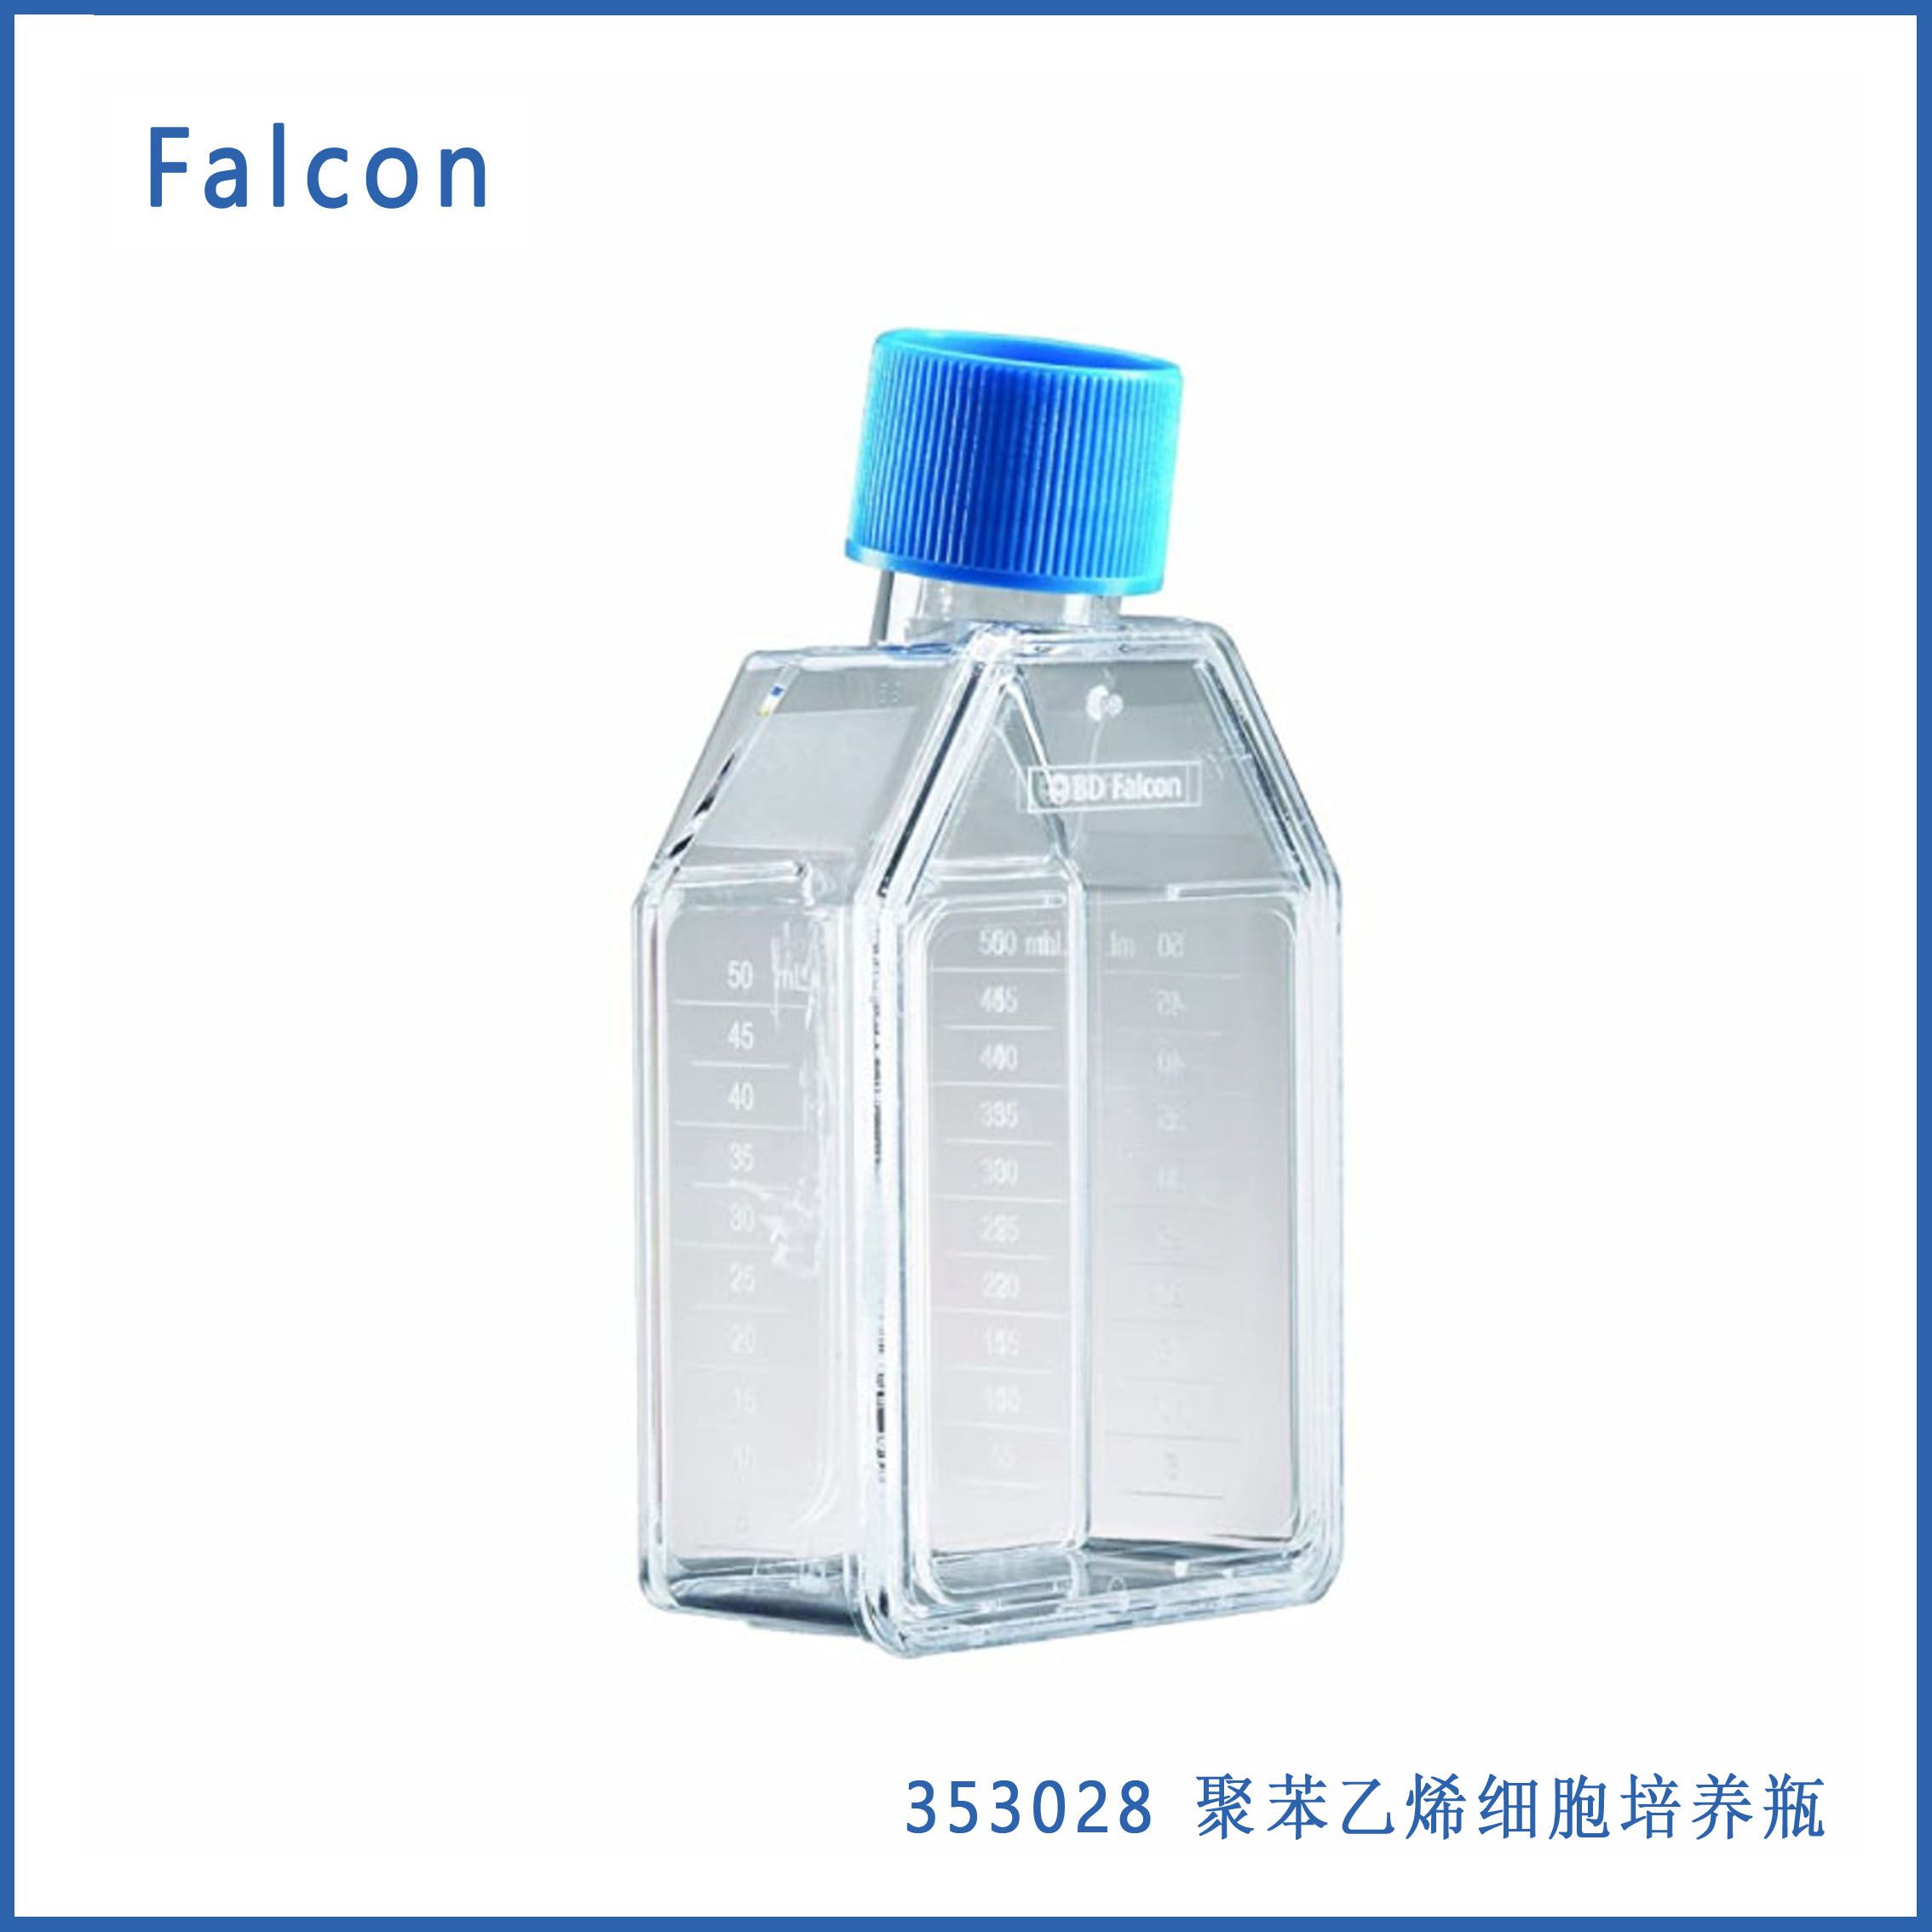 Falcon 353028聚苯乙烯细胞培养瓶，带蓝色塞密封螺帽，直颈，175平方厘米培养面积，750mL容量